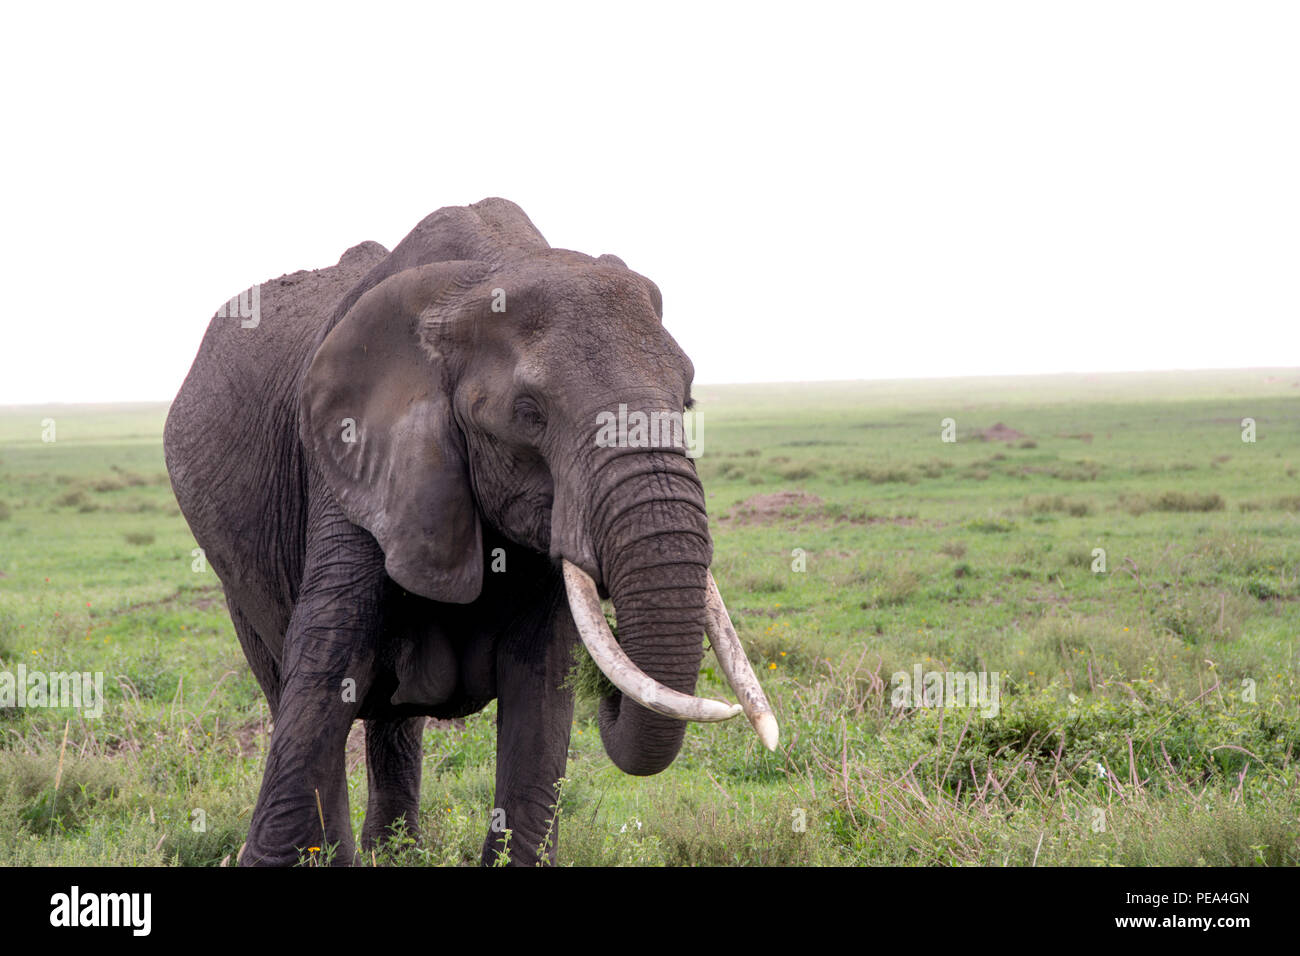 Un elefante hembra alimentándose en la llanura central de Parque Nacional del Serengeti, Tanzania. Foto de stock